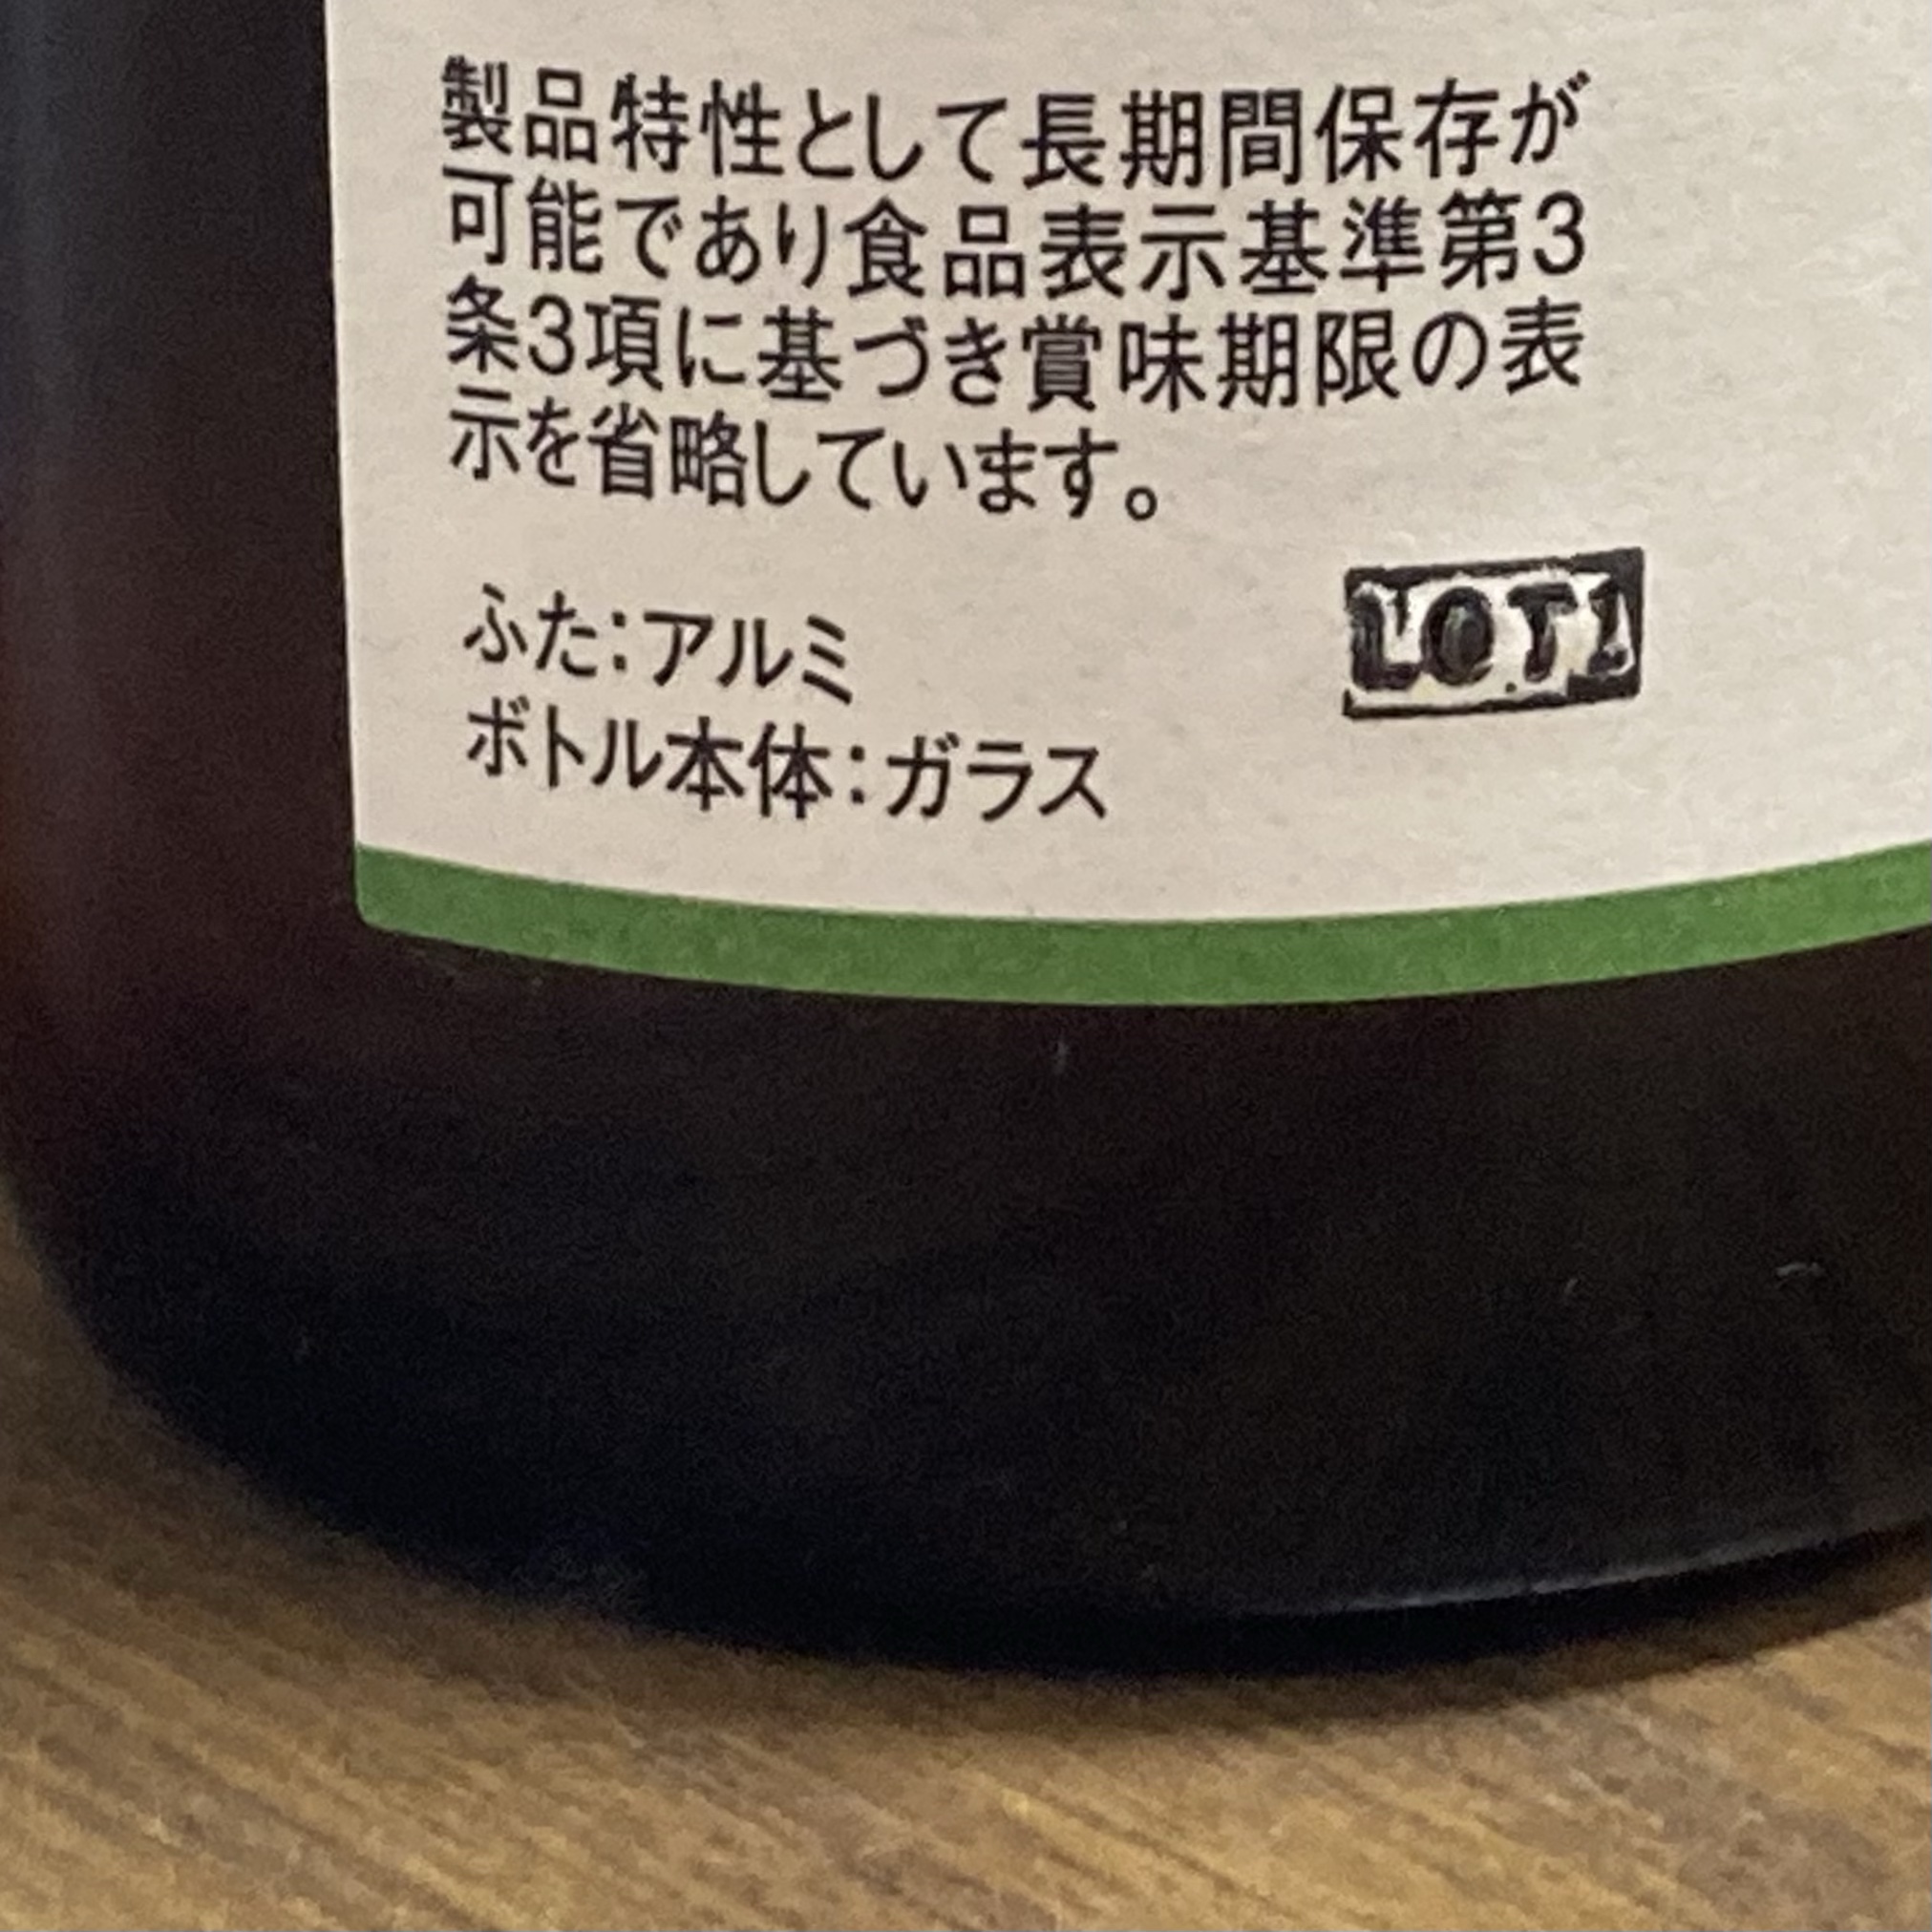 北海道酵素 賞味期限表示の省略